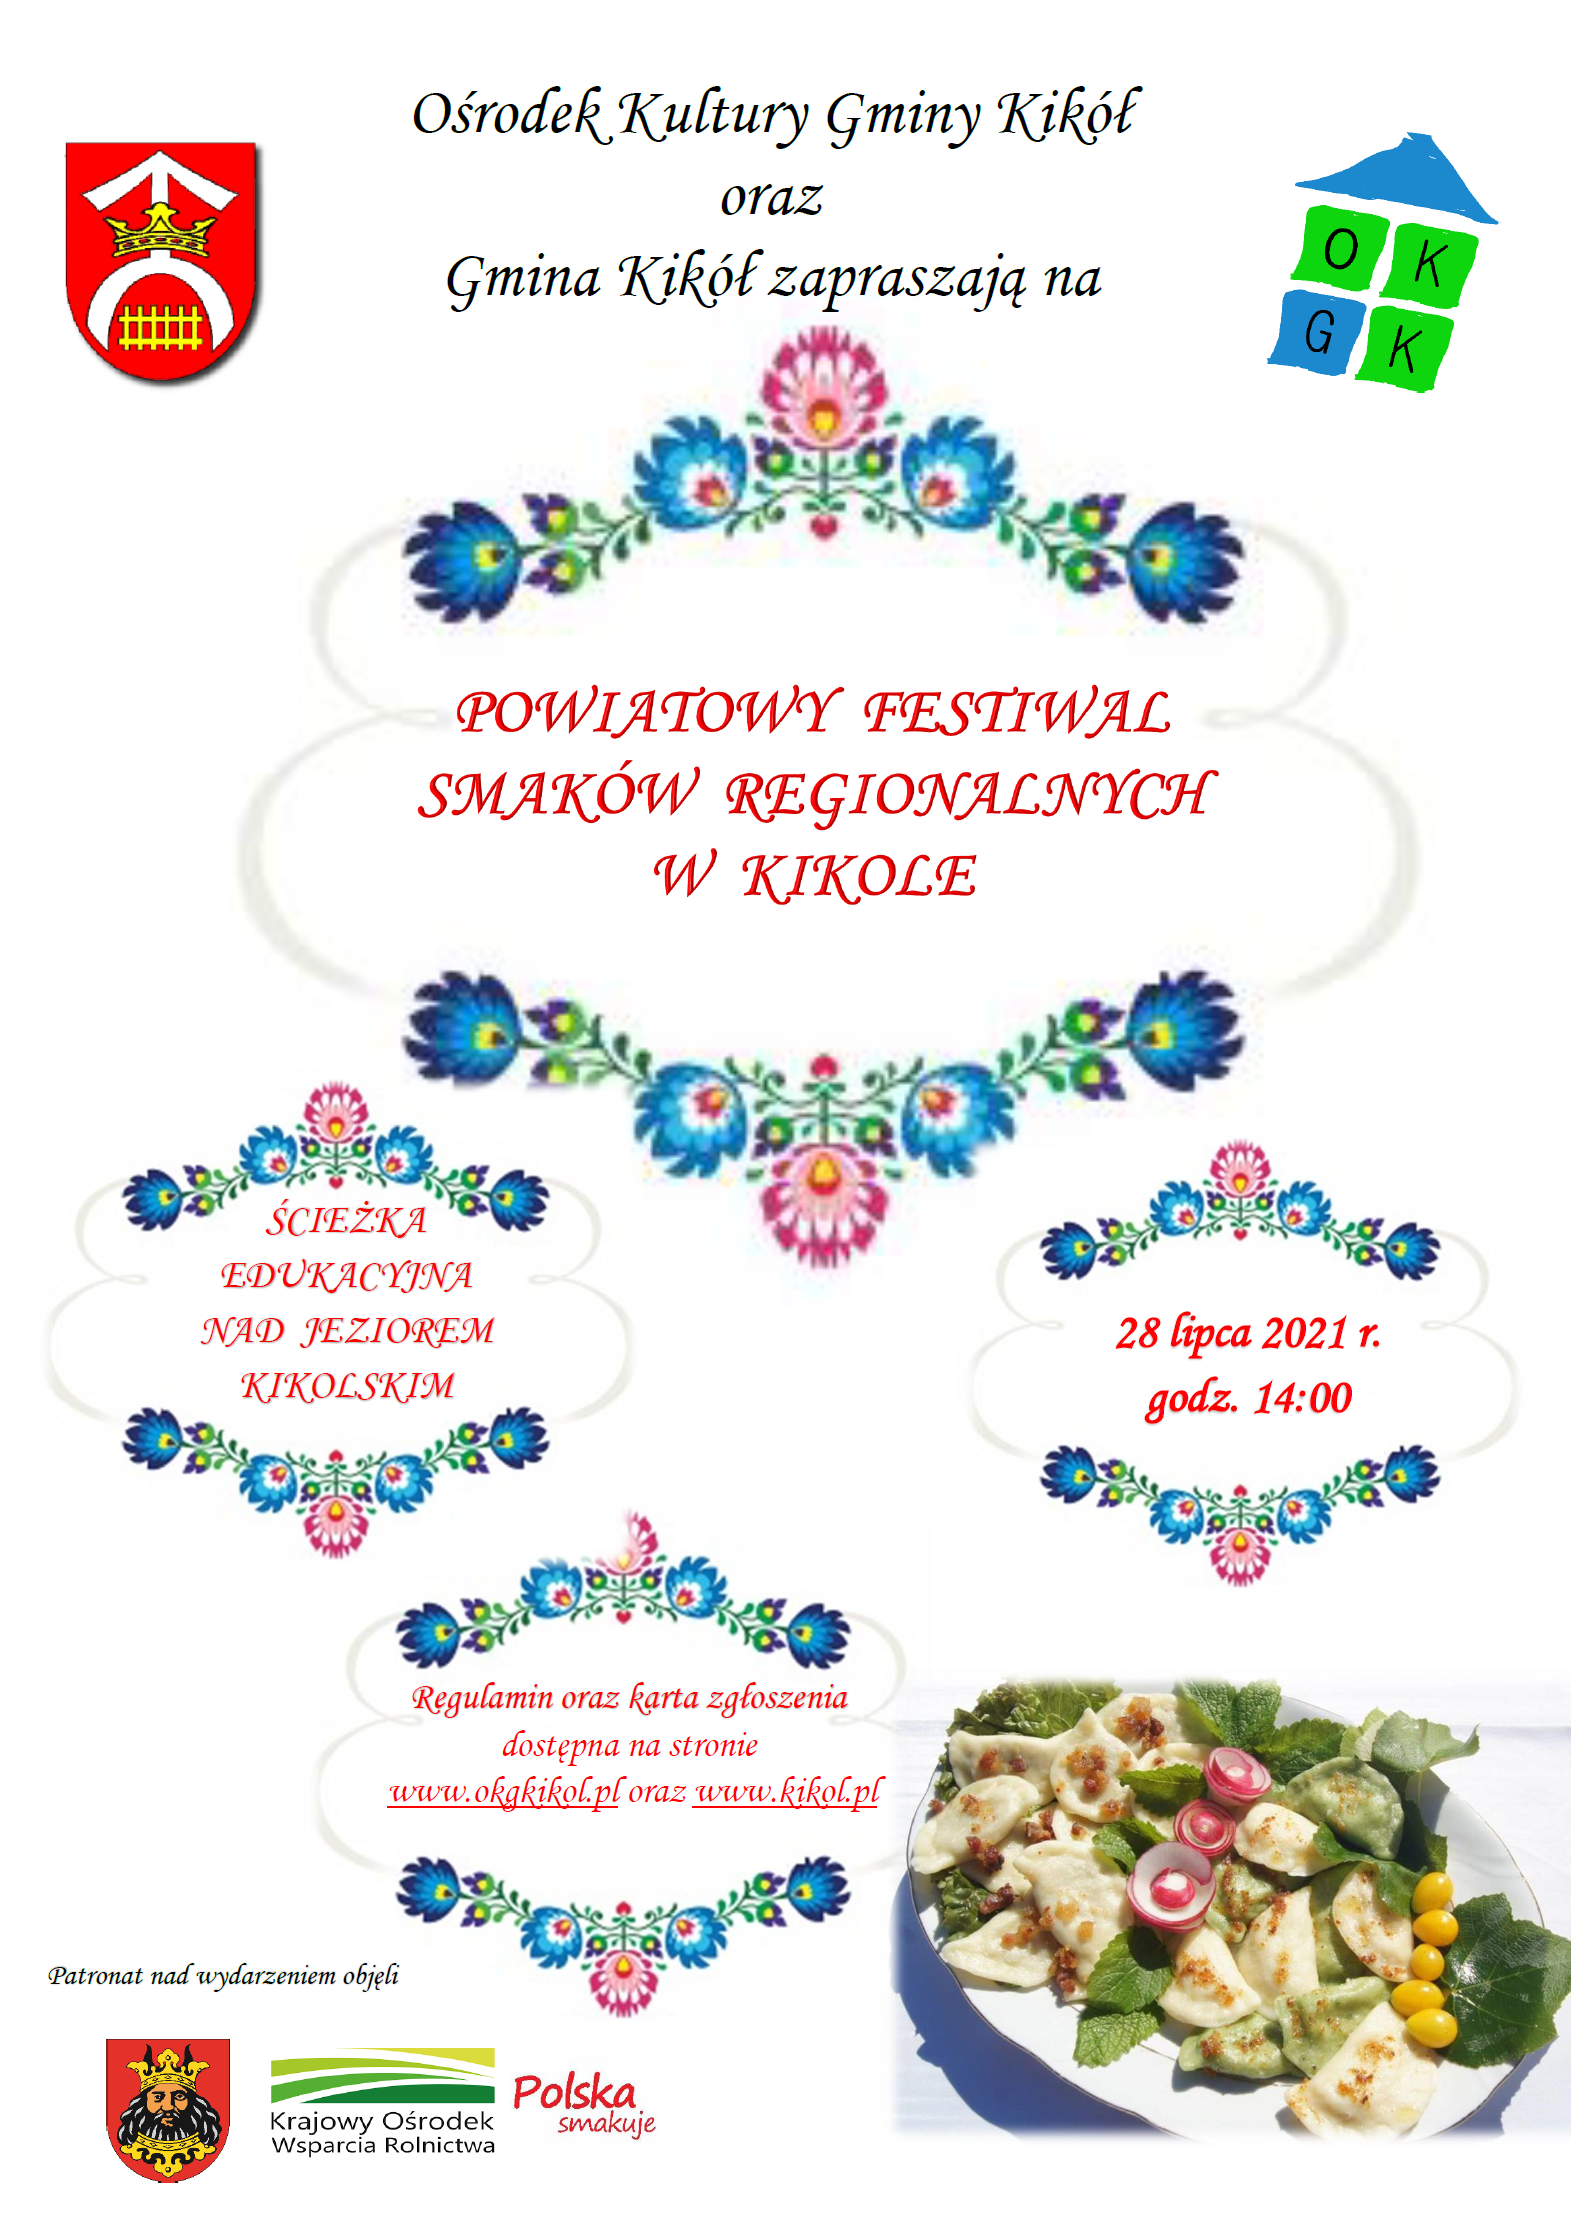 Plakat z informacją o "Powiatowym Festiwalu Smaków Regionalnych w Kikole"